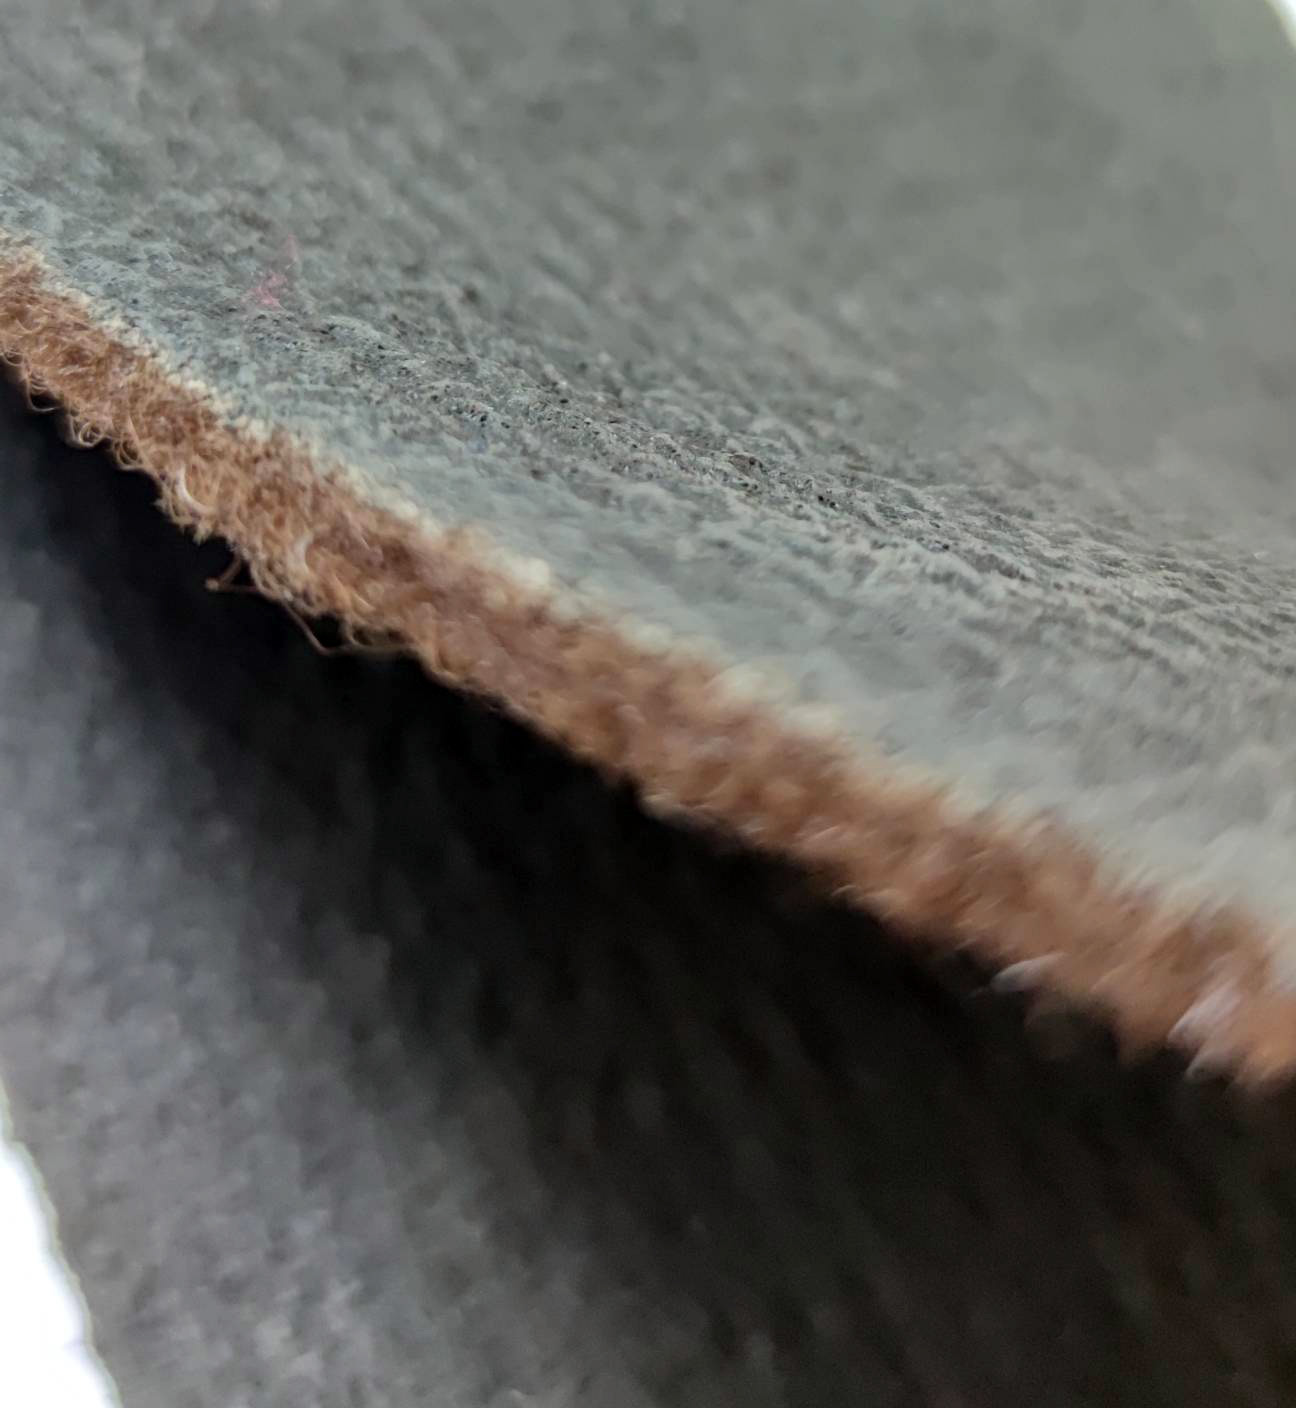 Иглопробивное покрытие на резине "Практик" 2.0x30м серый